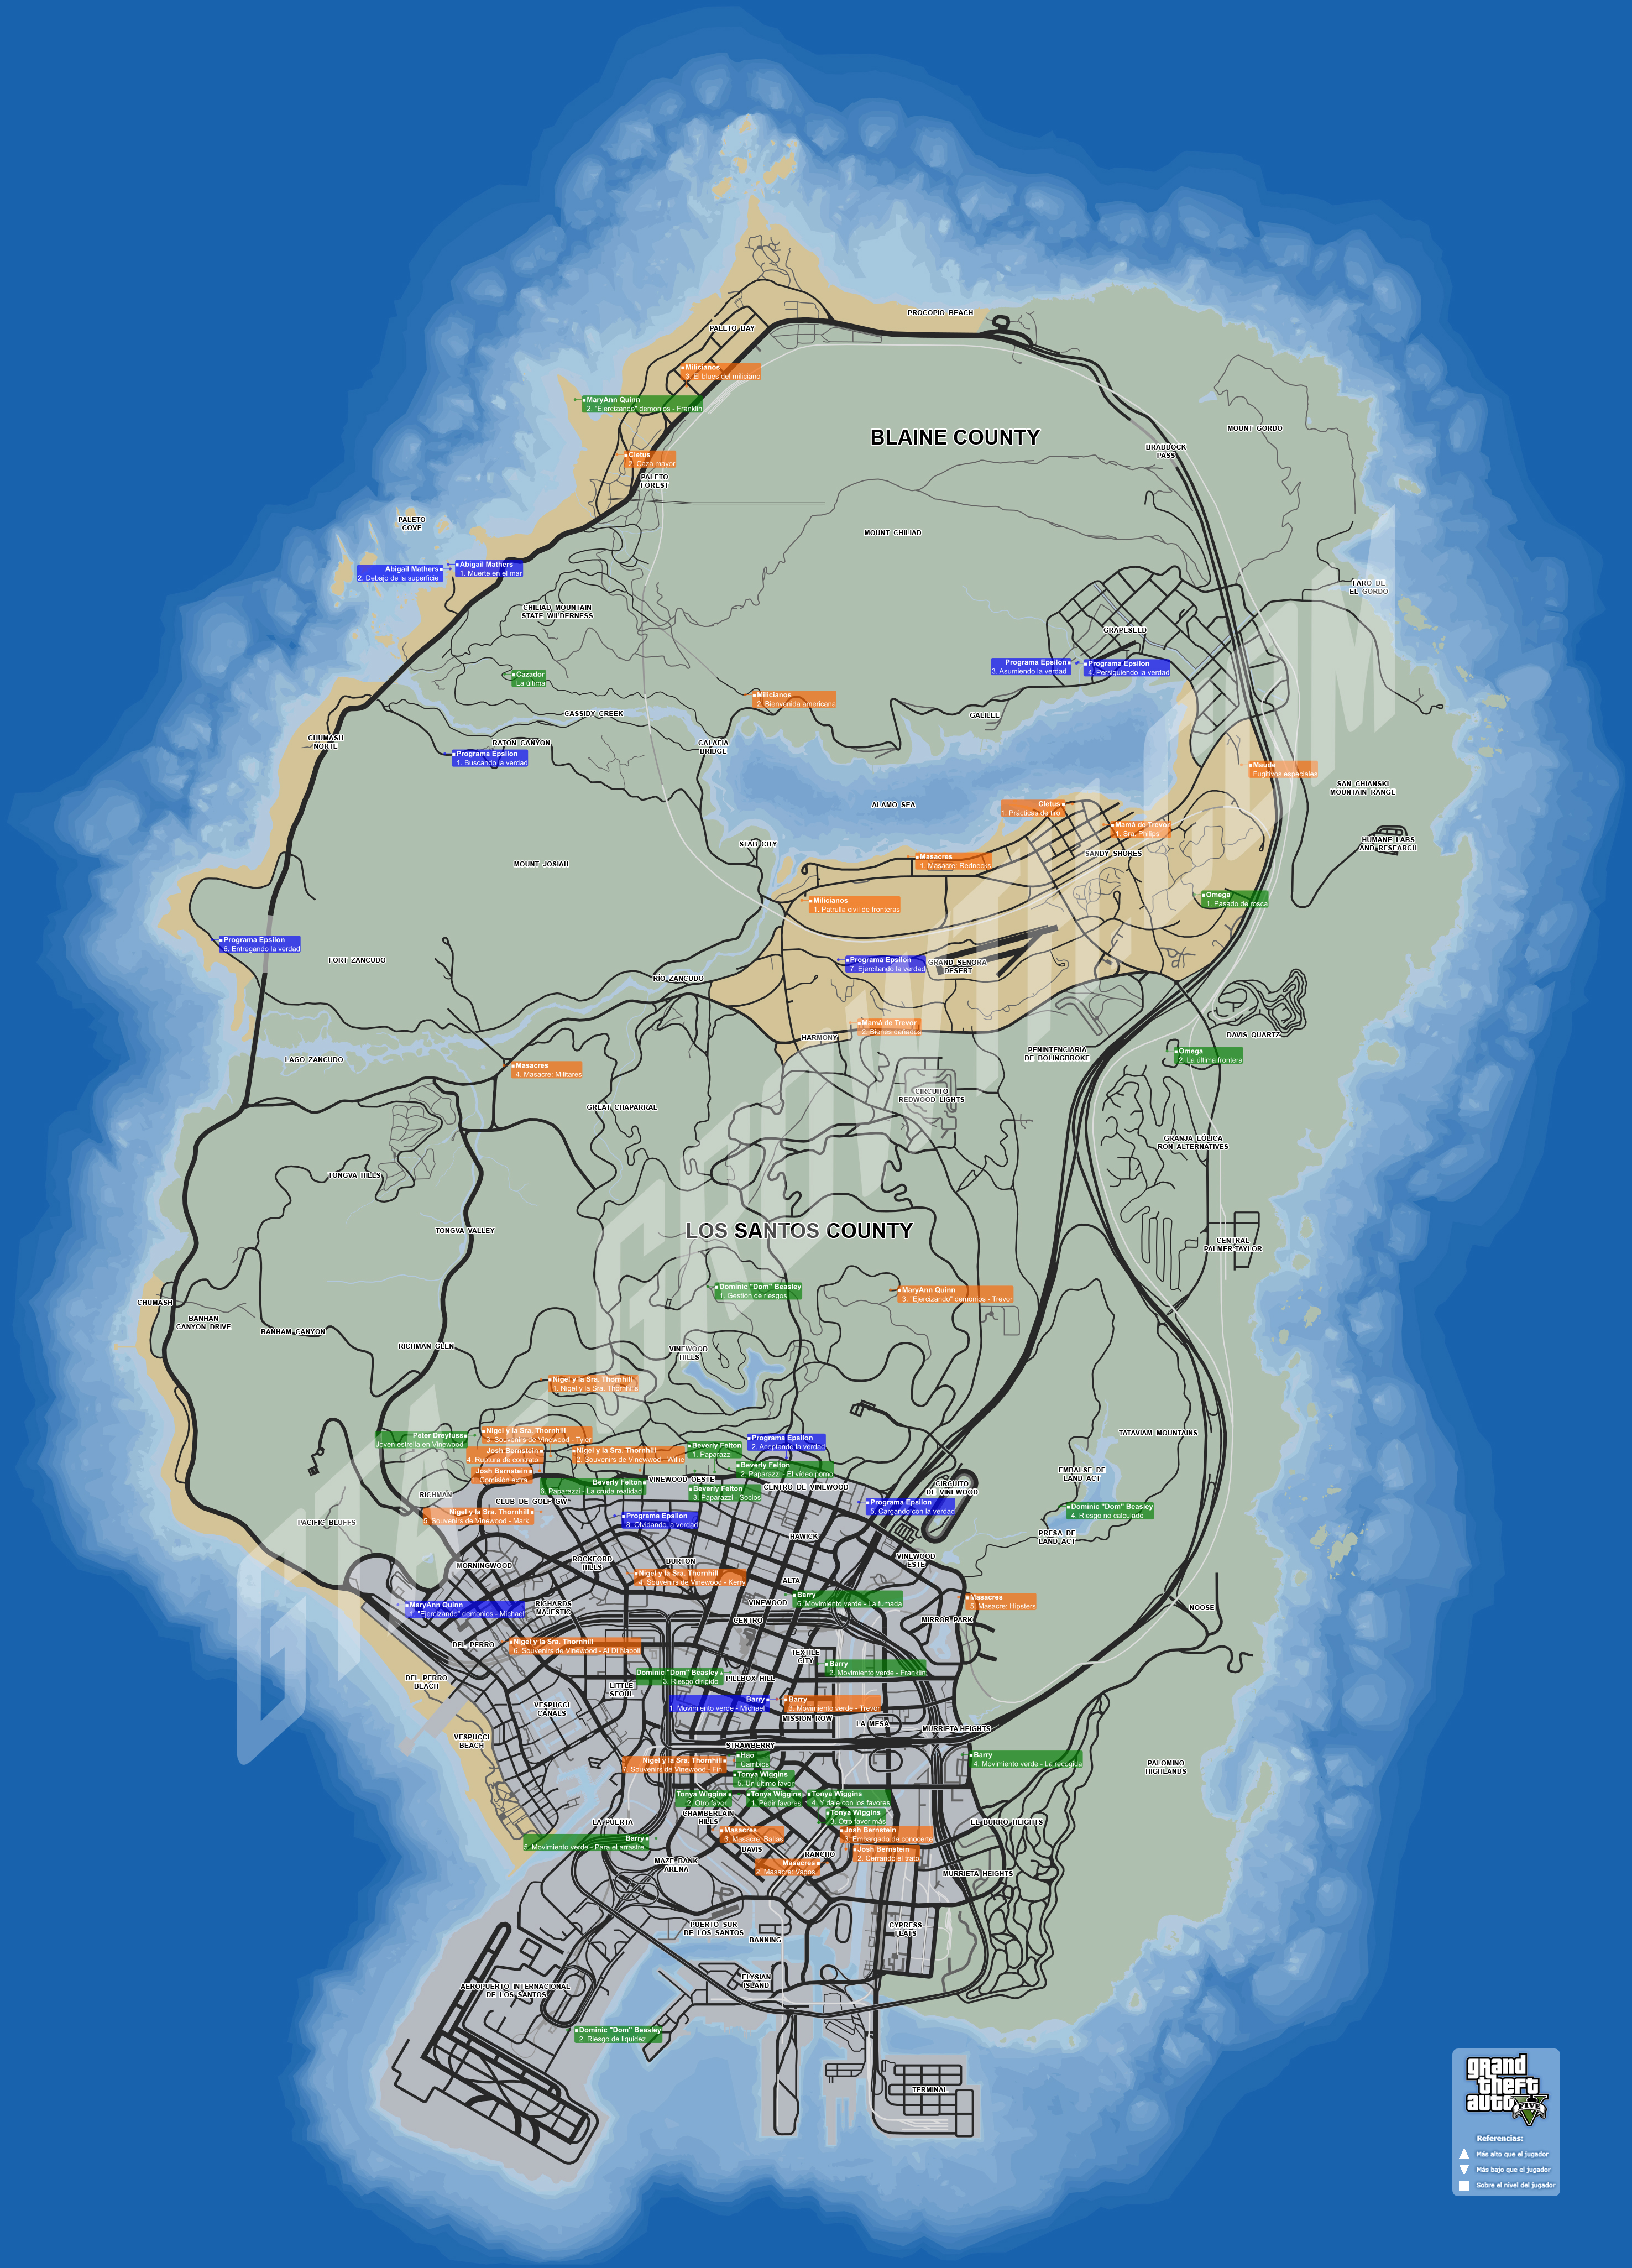 GTA6TRUCOS on X: El mapa de GTA 5 por la noche destaca que la